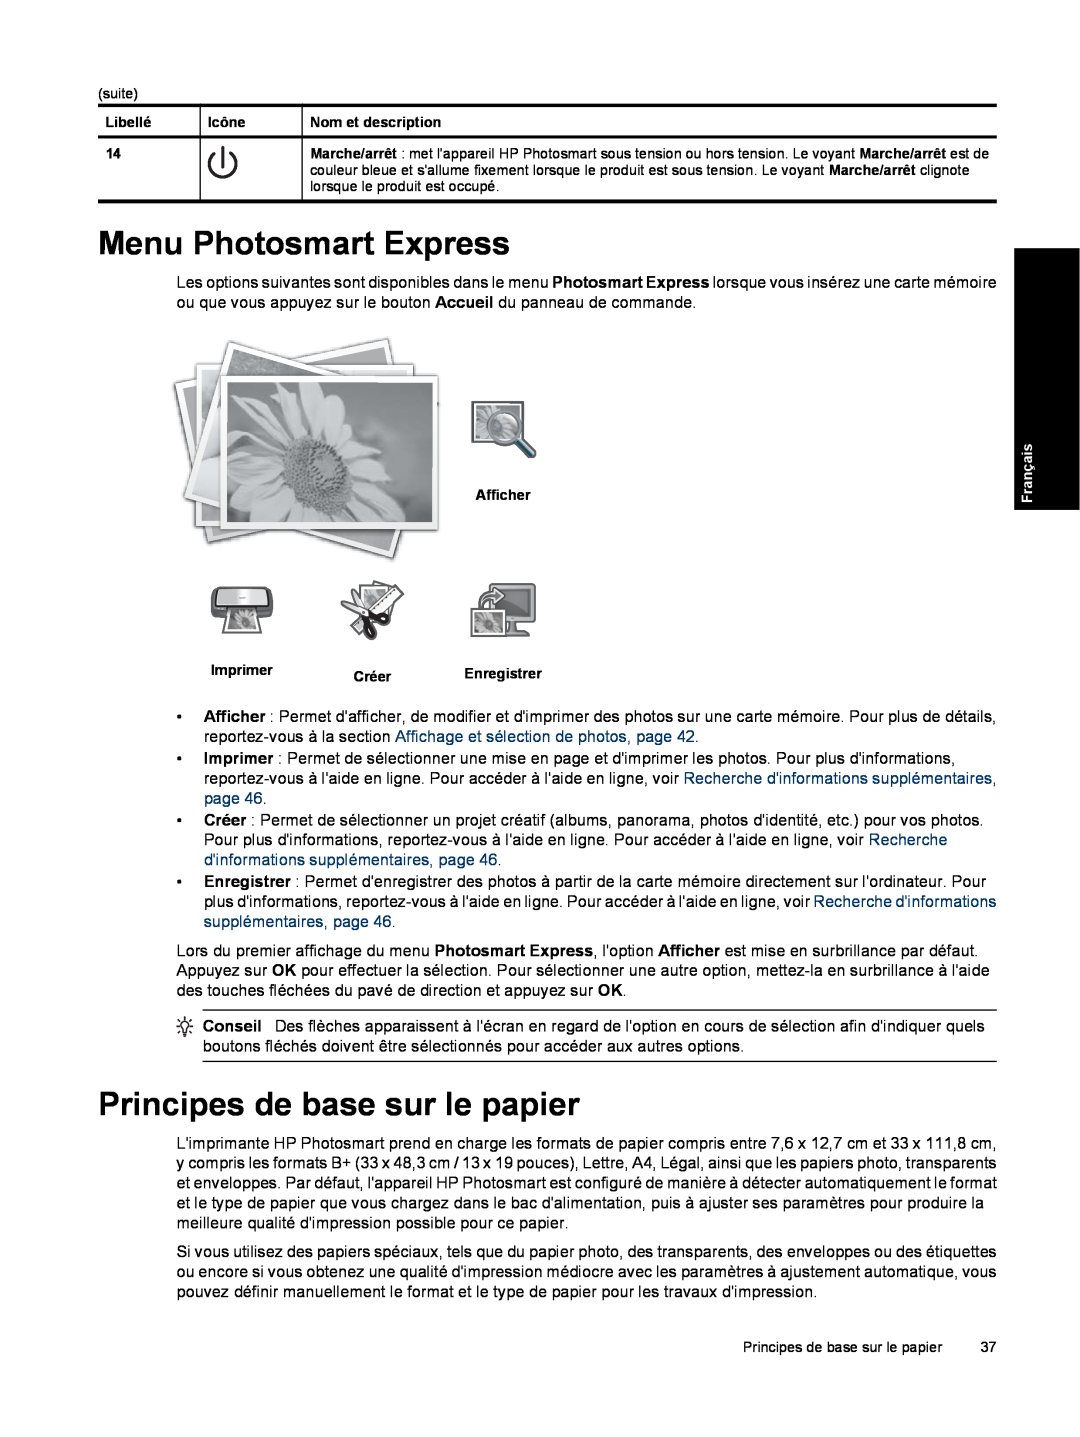 HP B8550 Photo CB981A#B1H manual Menu Photosmart Express, Principes de base sur le papier, suite 